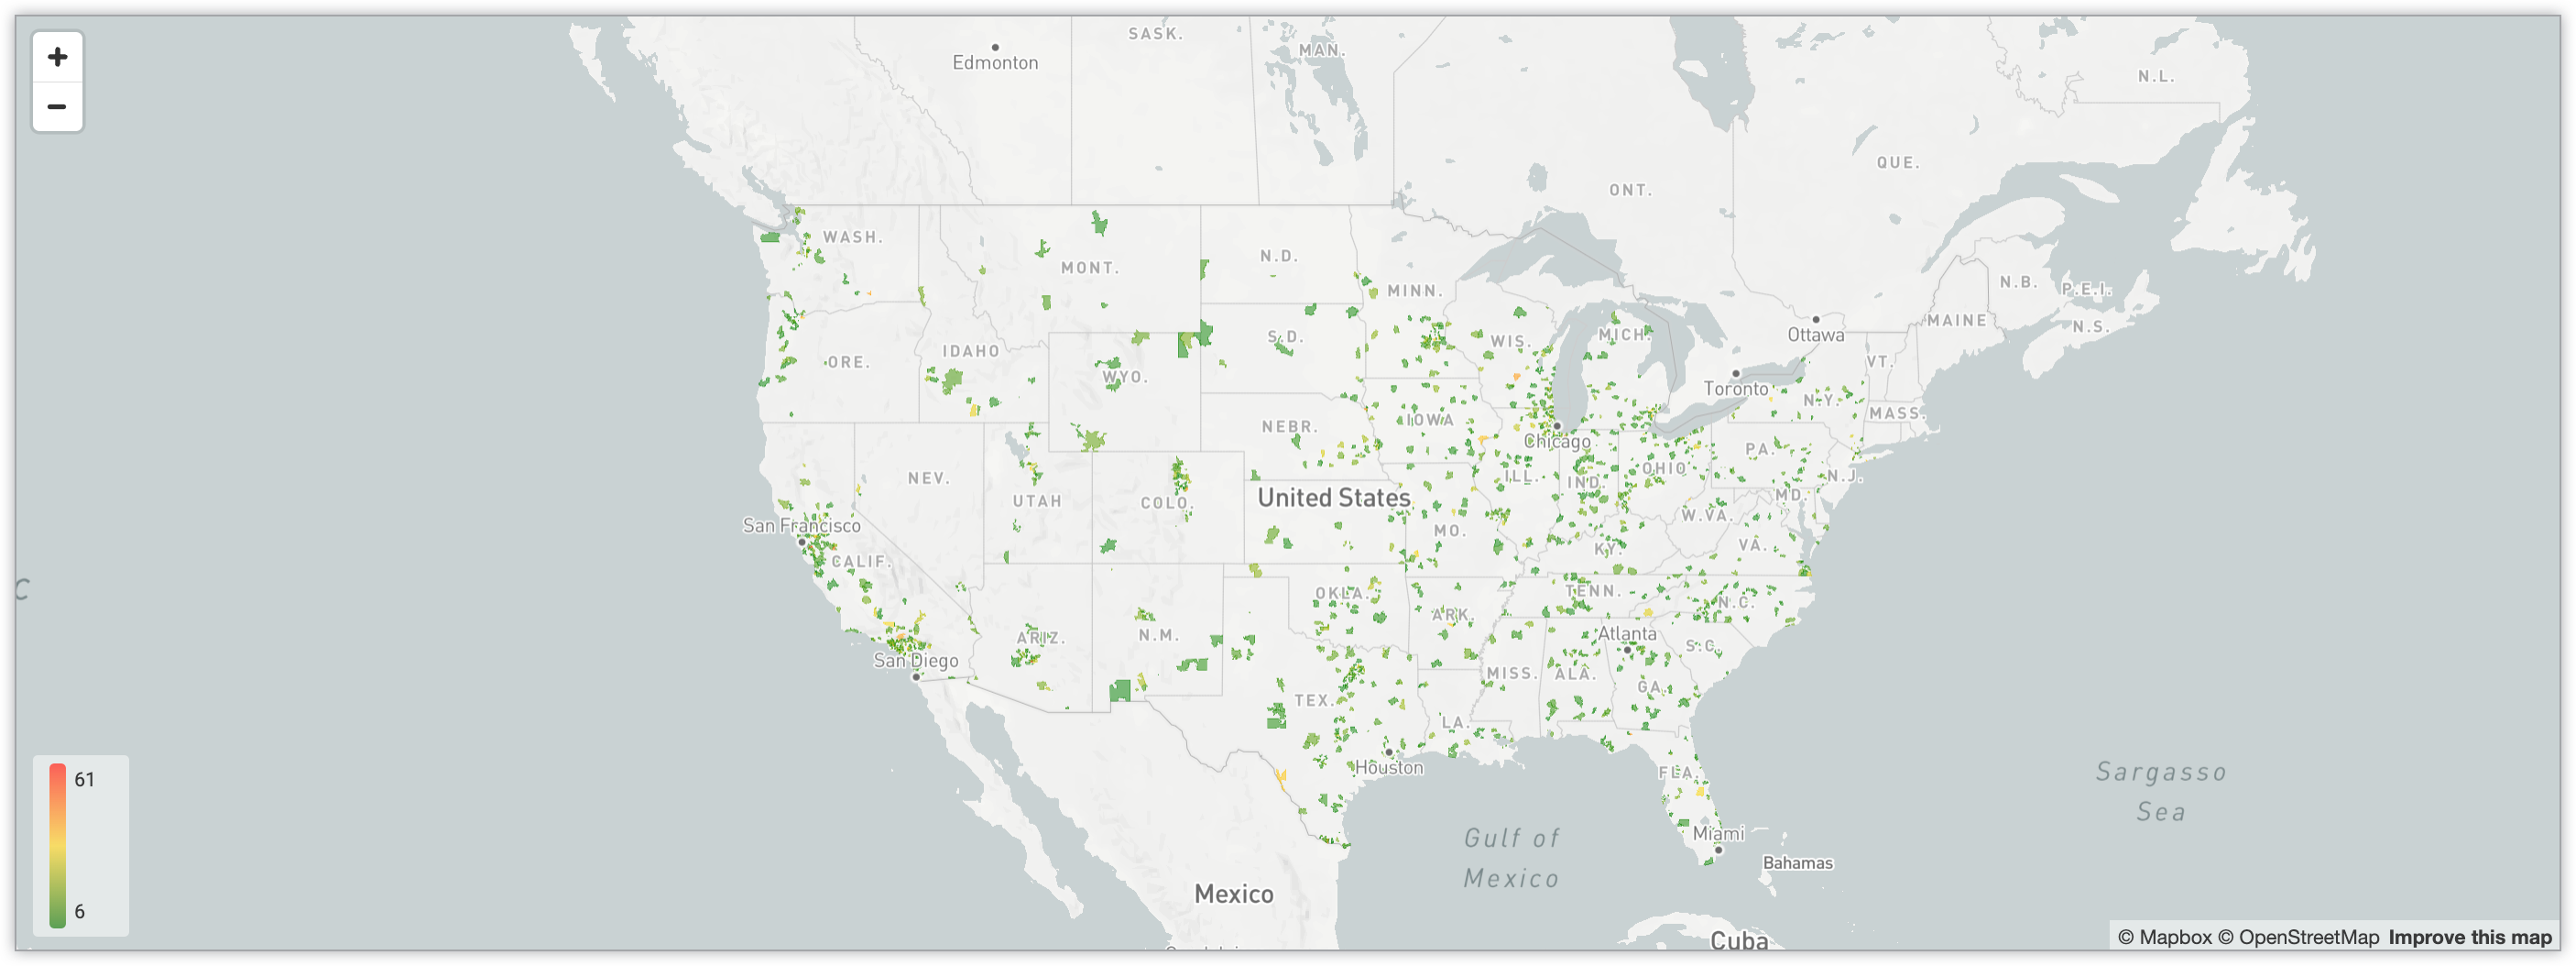 Mapa interactivo que muestra la cantidad de usuarios de códigos postales de los Estados Unidos mediante un sistema de codificación de colores con gradientes.